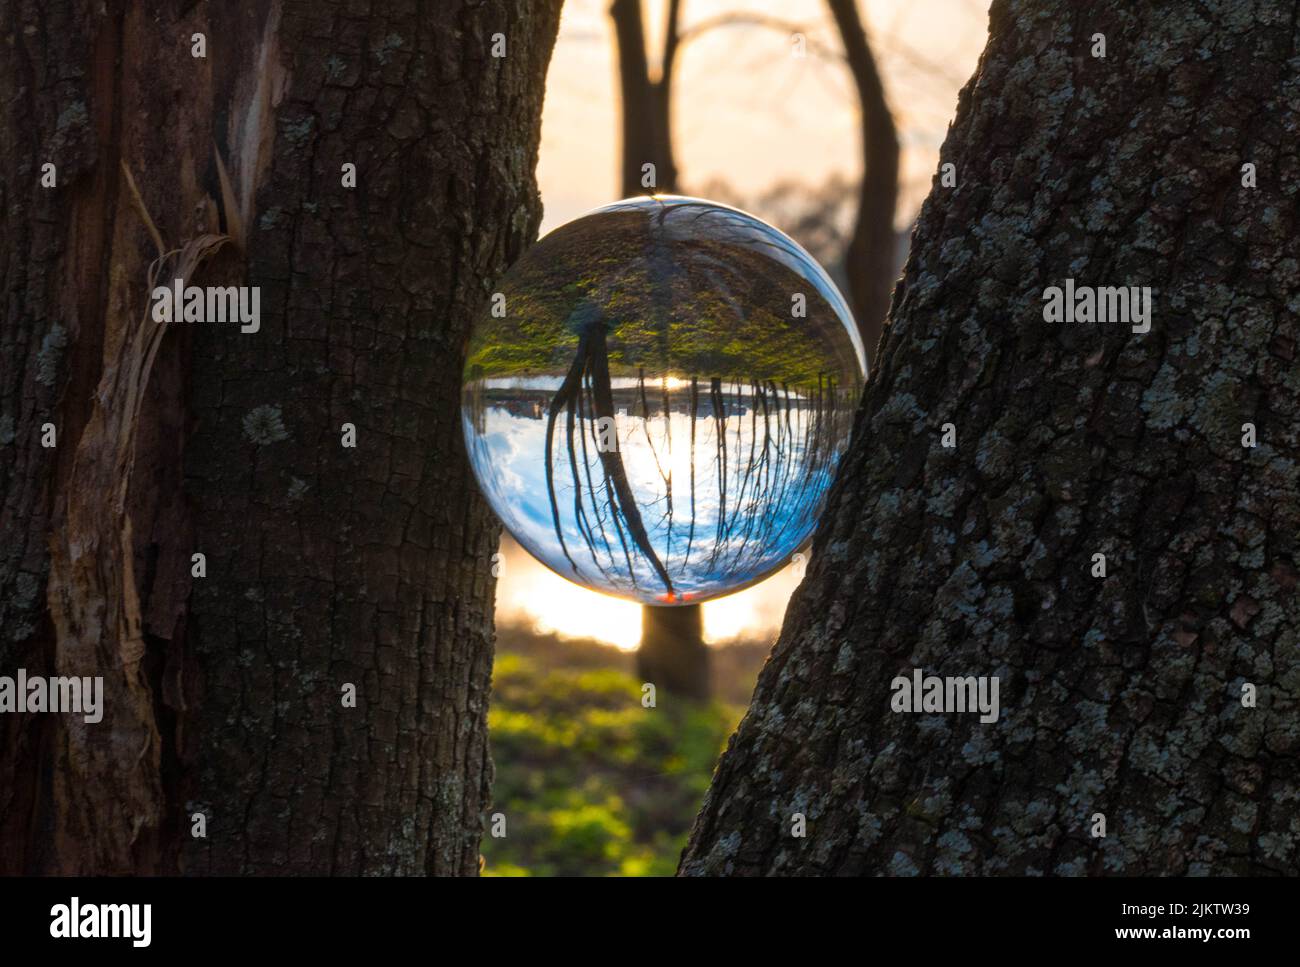 Una sfera di cristallo posta tra tronchi d'albero riflette un paesaggio boscoso all'alba Foto Stock